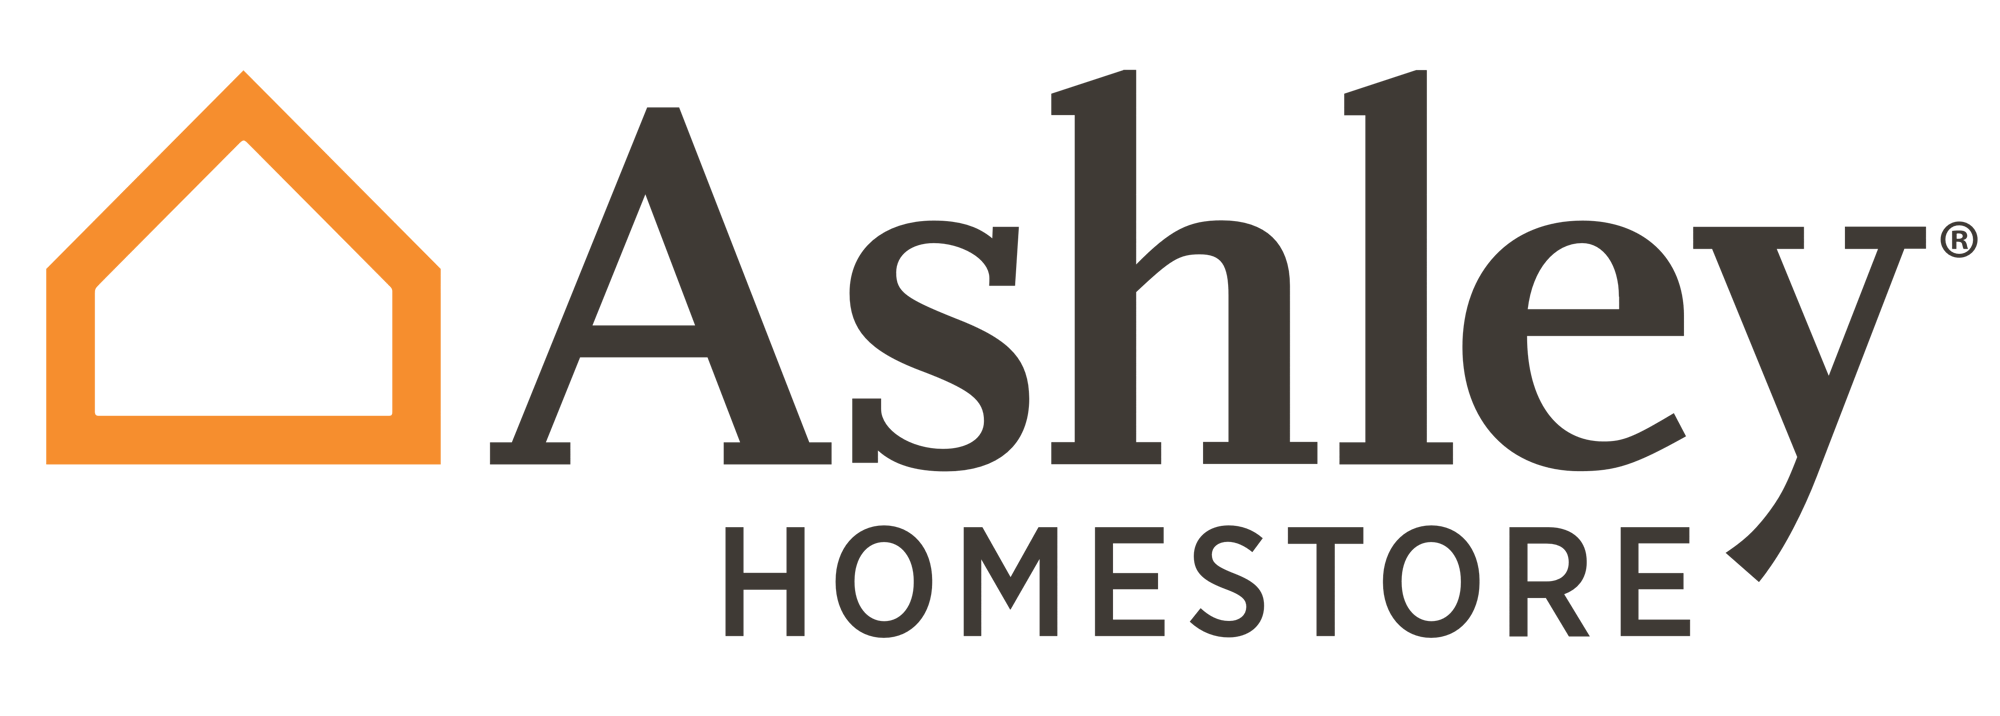 Ashley_Homestore_logo_logotype